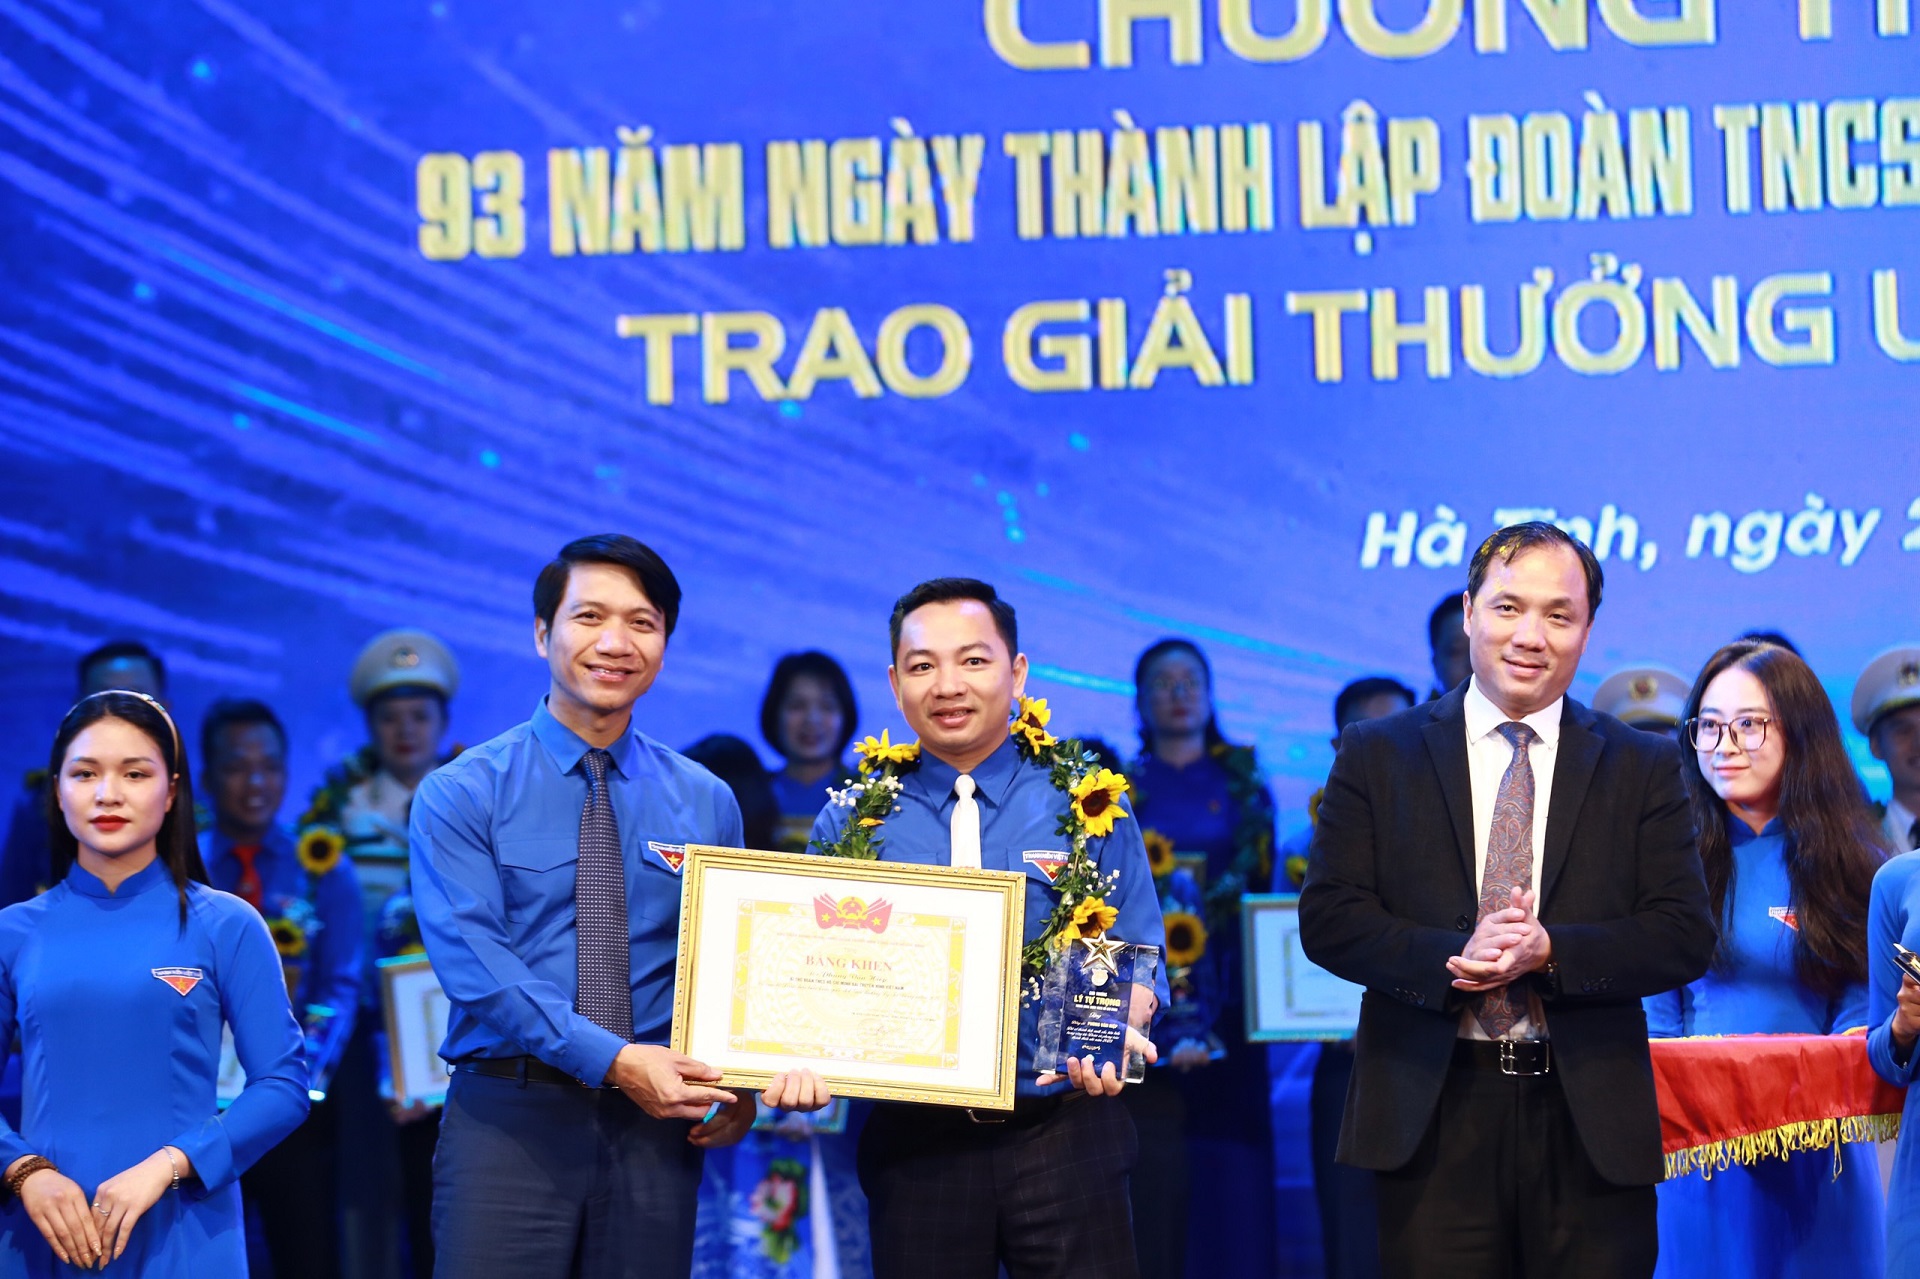 Bí thư Đoàn VTV được trao giải thưởng Lý Tự Trọng cho cán bộ Đoàn xuất sắc